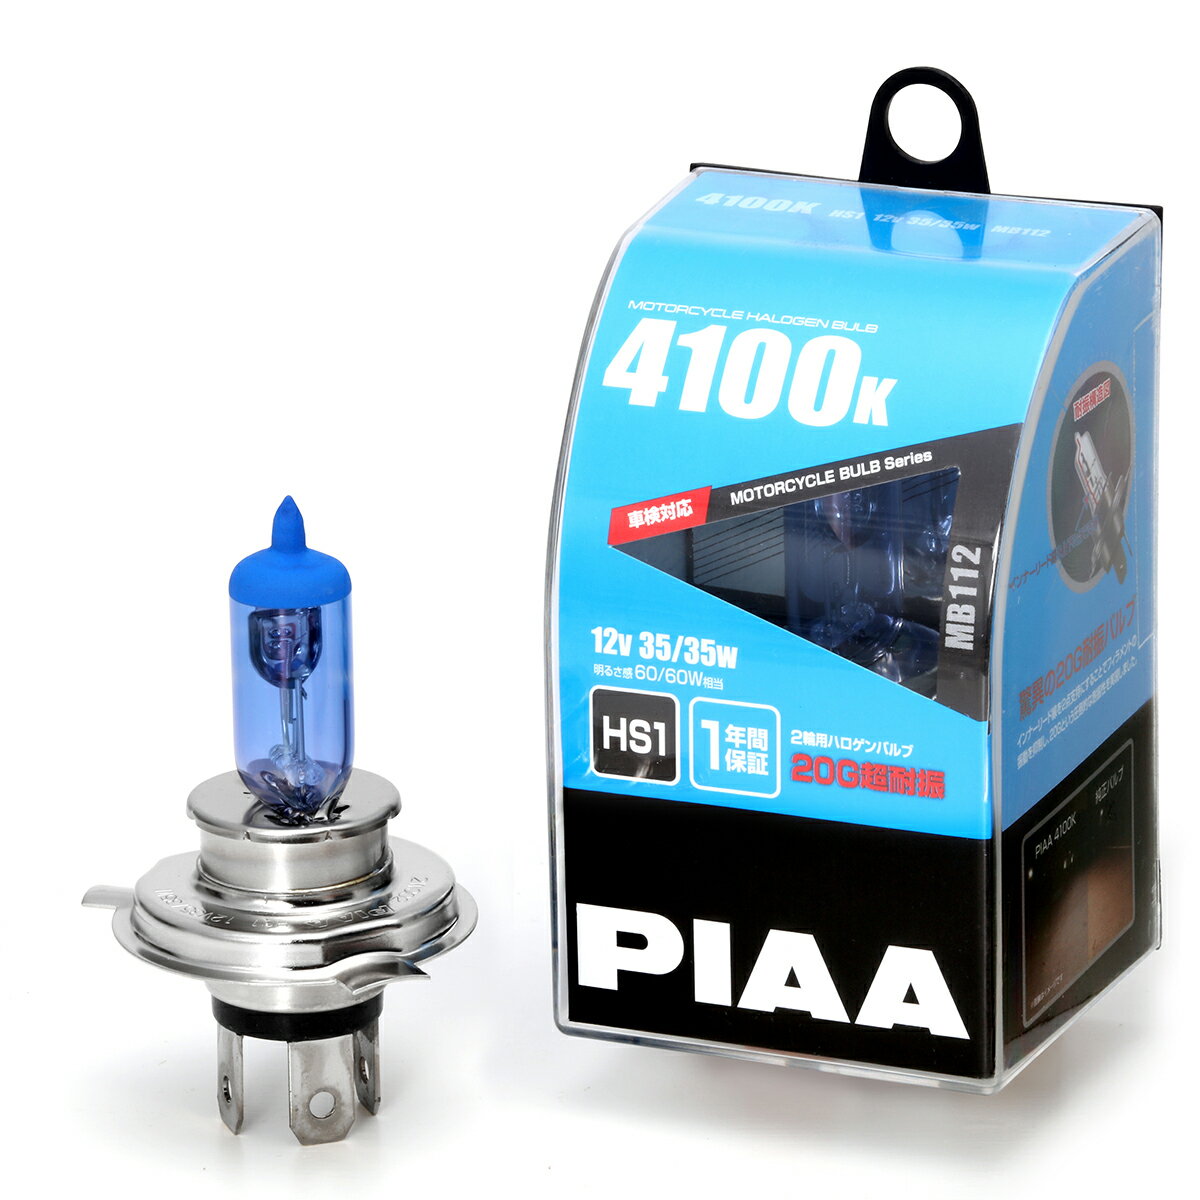 PIAA バイク用ヘッドライトバルブ ハロゲン 4100K 明るさ感60/60W HS1 高耐震性能20G 1年保証 1個入 MB112